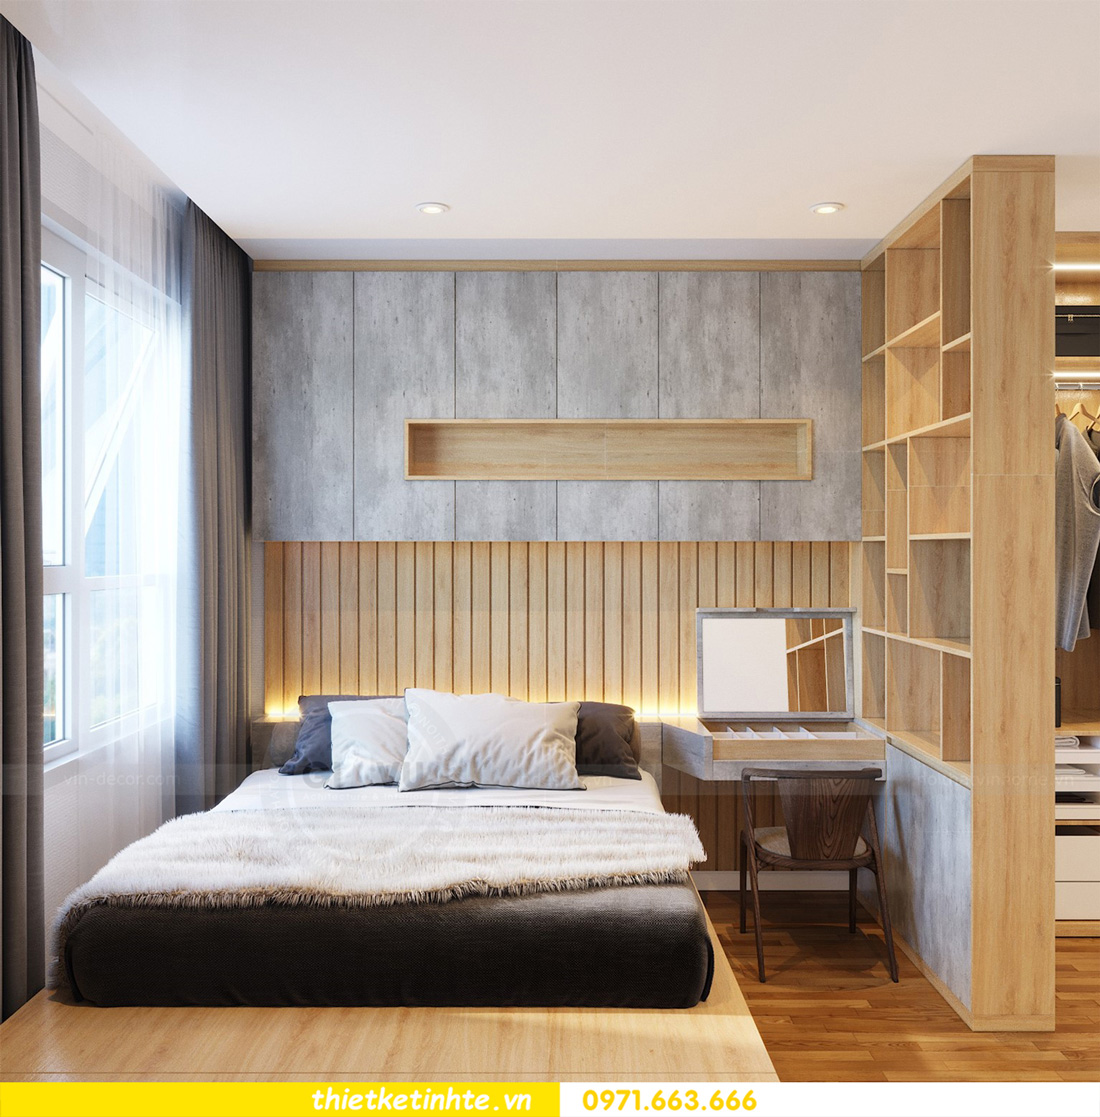 99 mẫu thiết kế nội thất phòng ngủ hiện đại cho chung cư 68